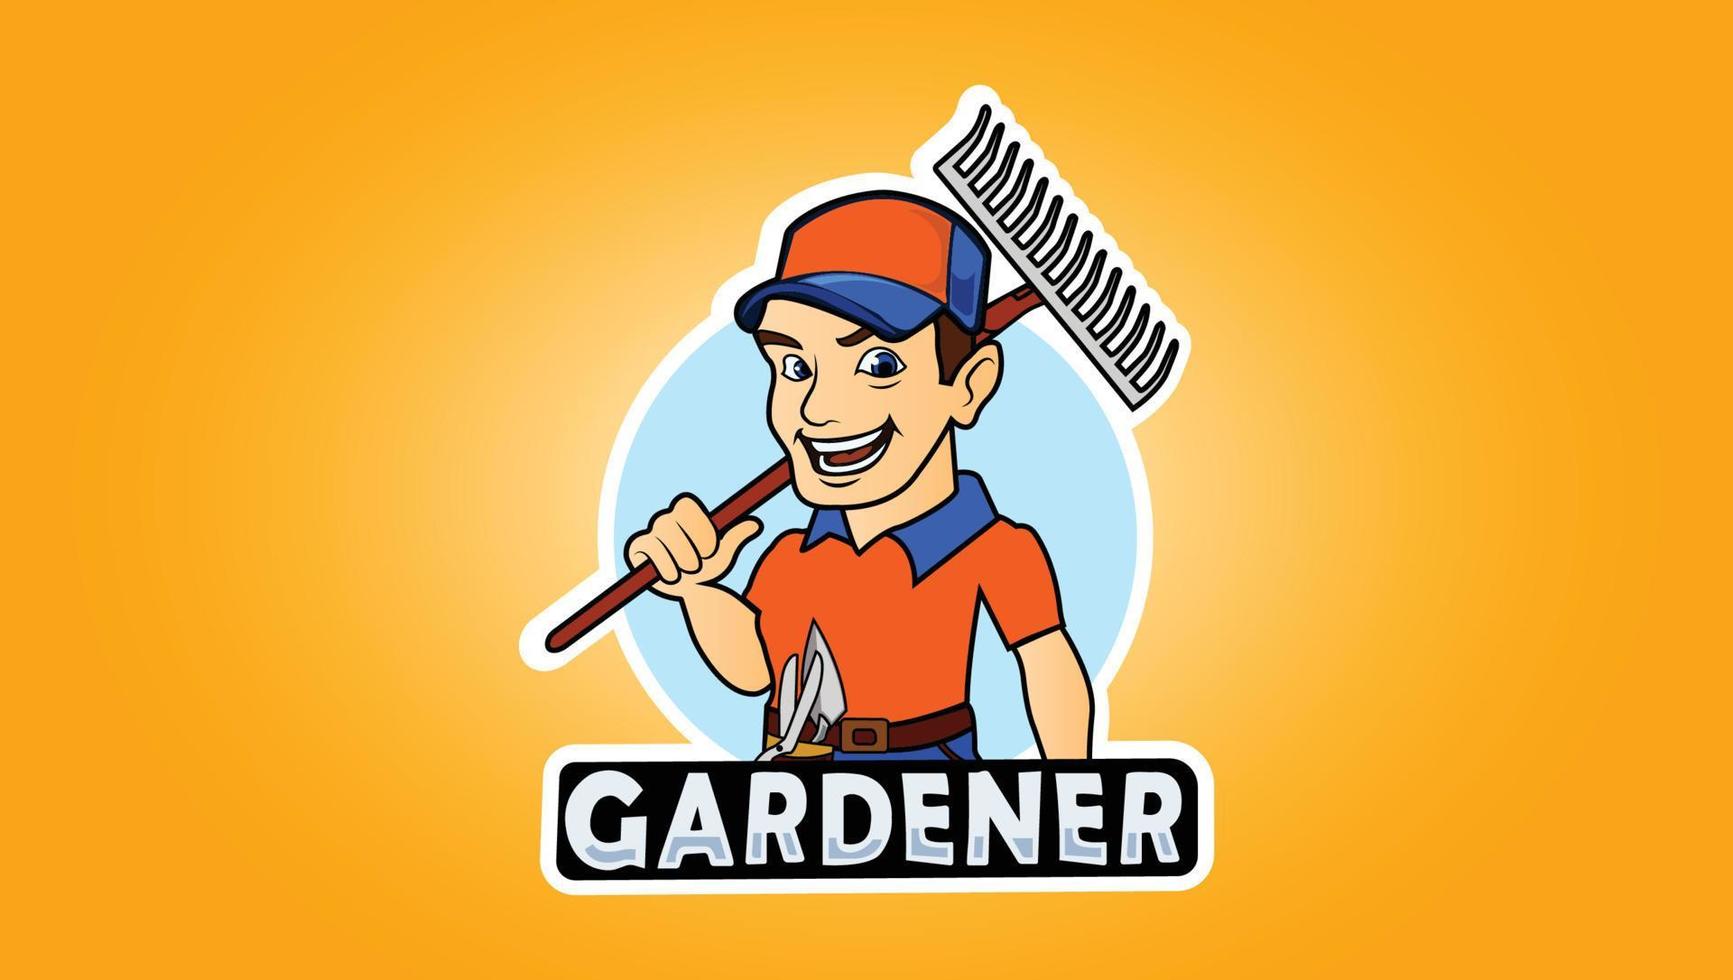 Cartoon gardener worker vector logo